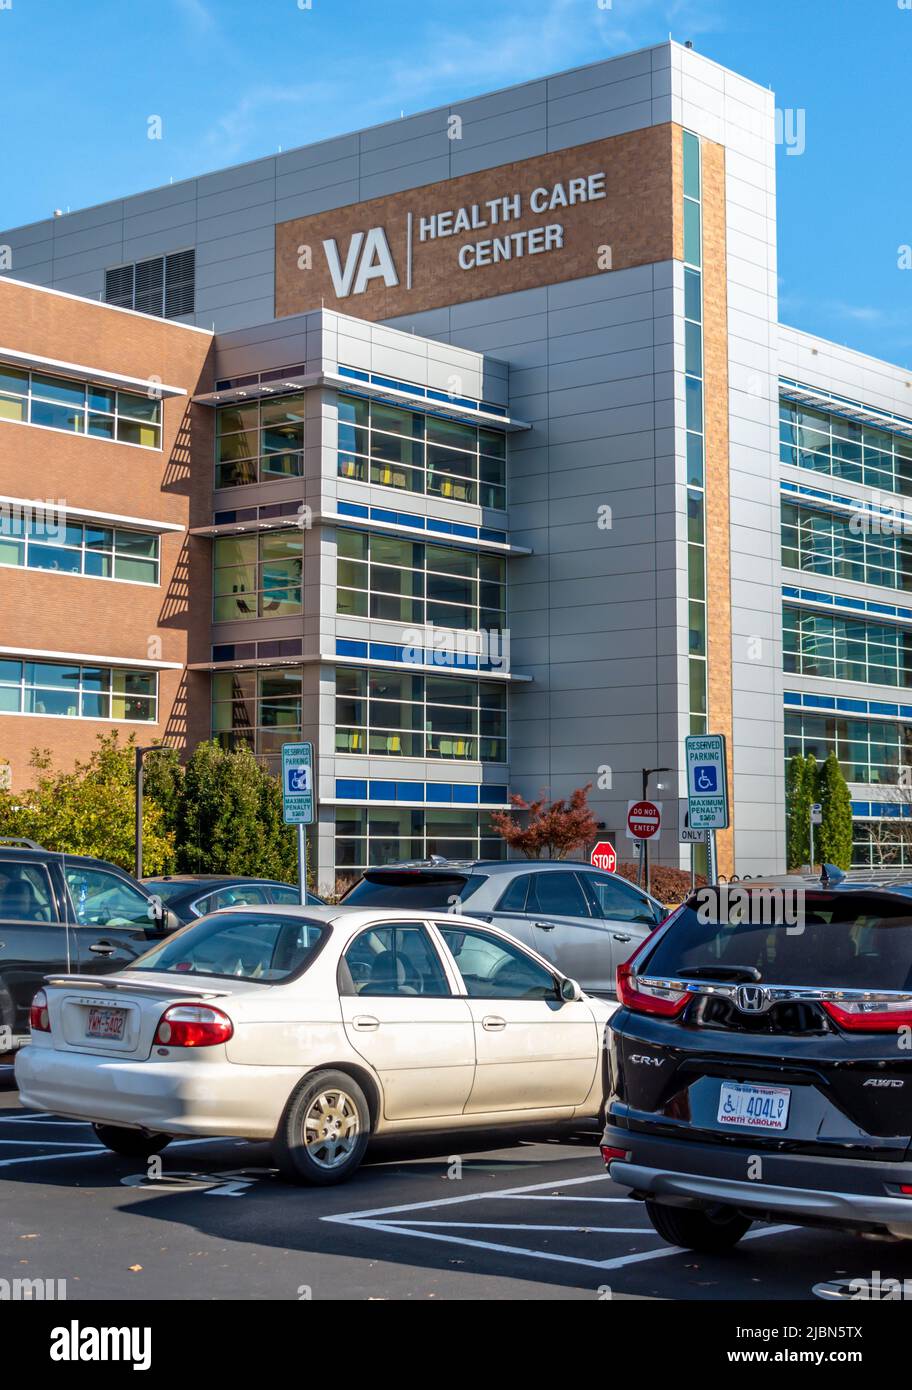 La facciata esterna del VA Health Care Center e la segnaletica con il logo in una giornata di sole luminoso con cielo blu, nuvole di nocciole, pavimenti, finestre e veicoli parcheggiati. Foto Stock